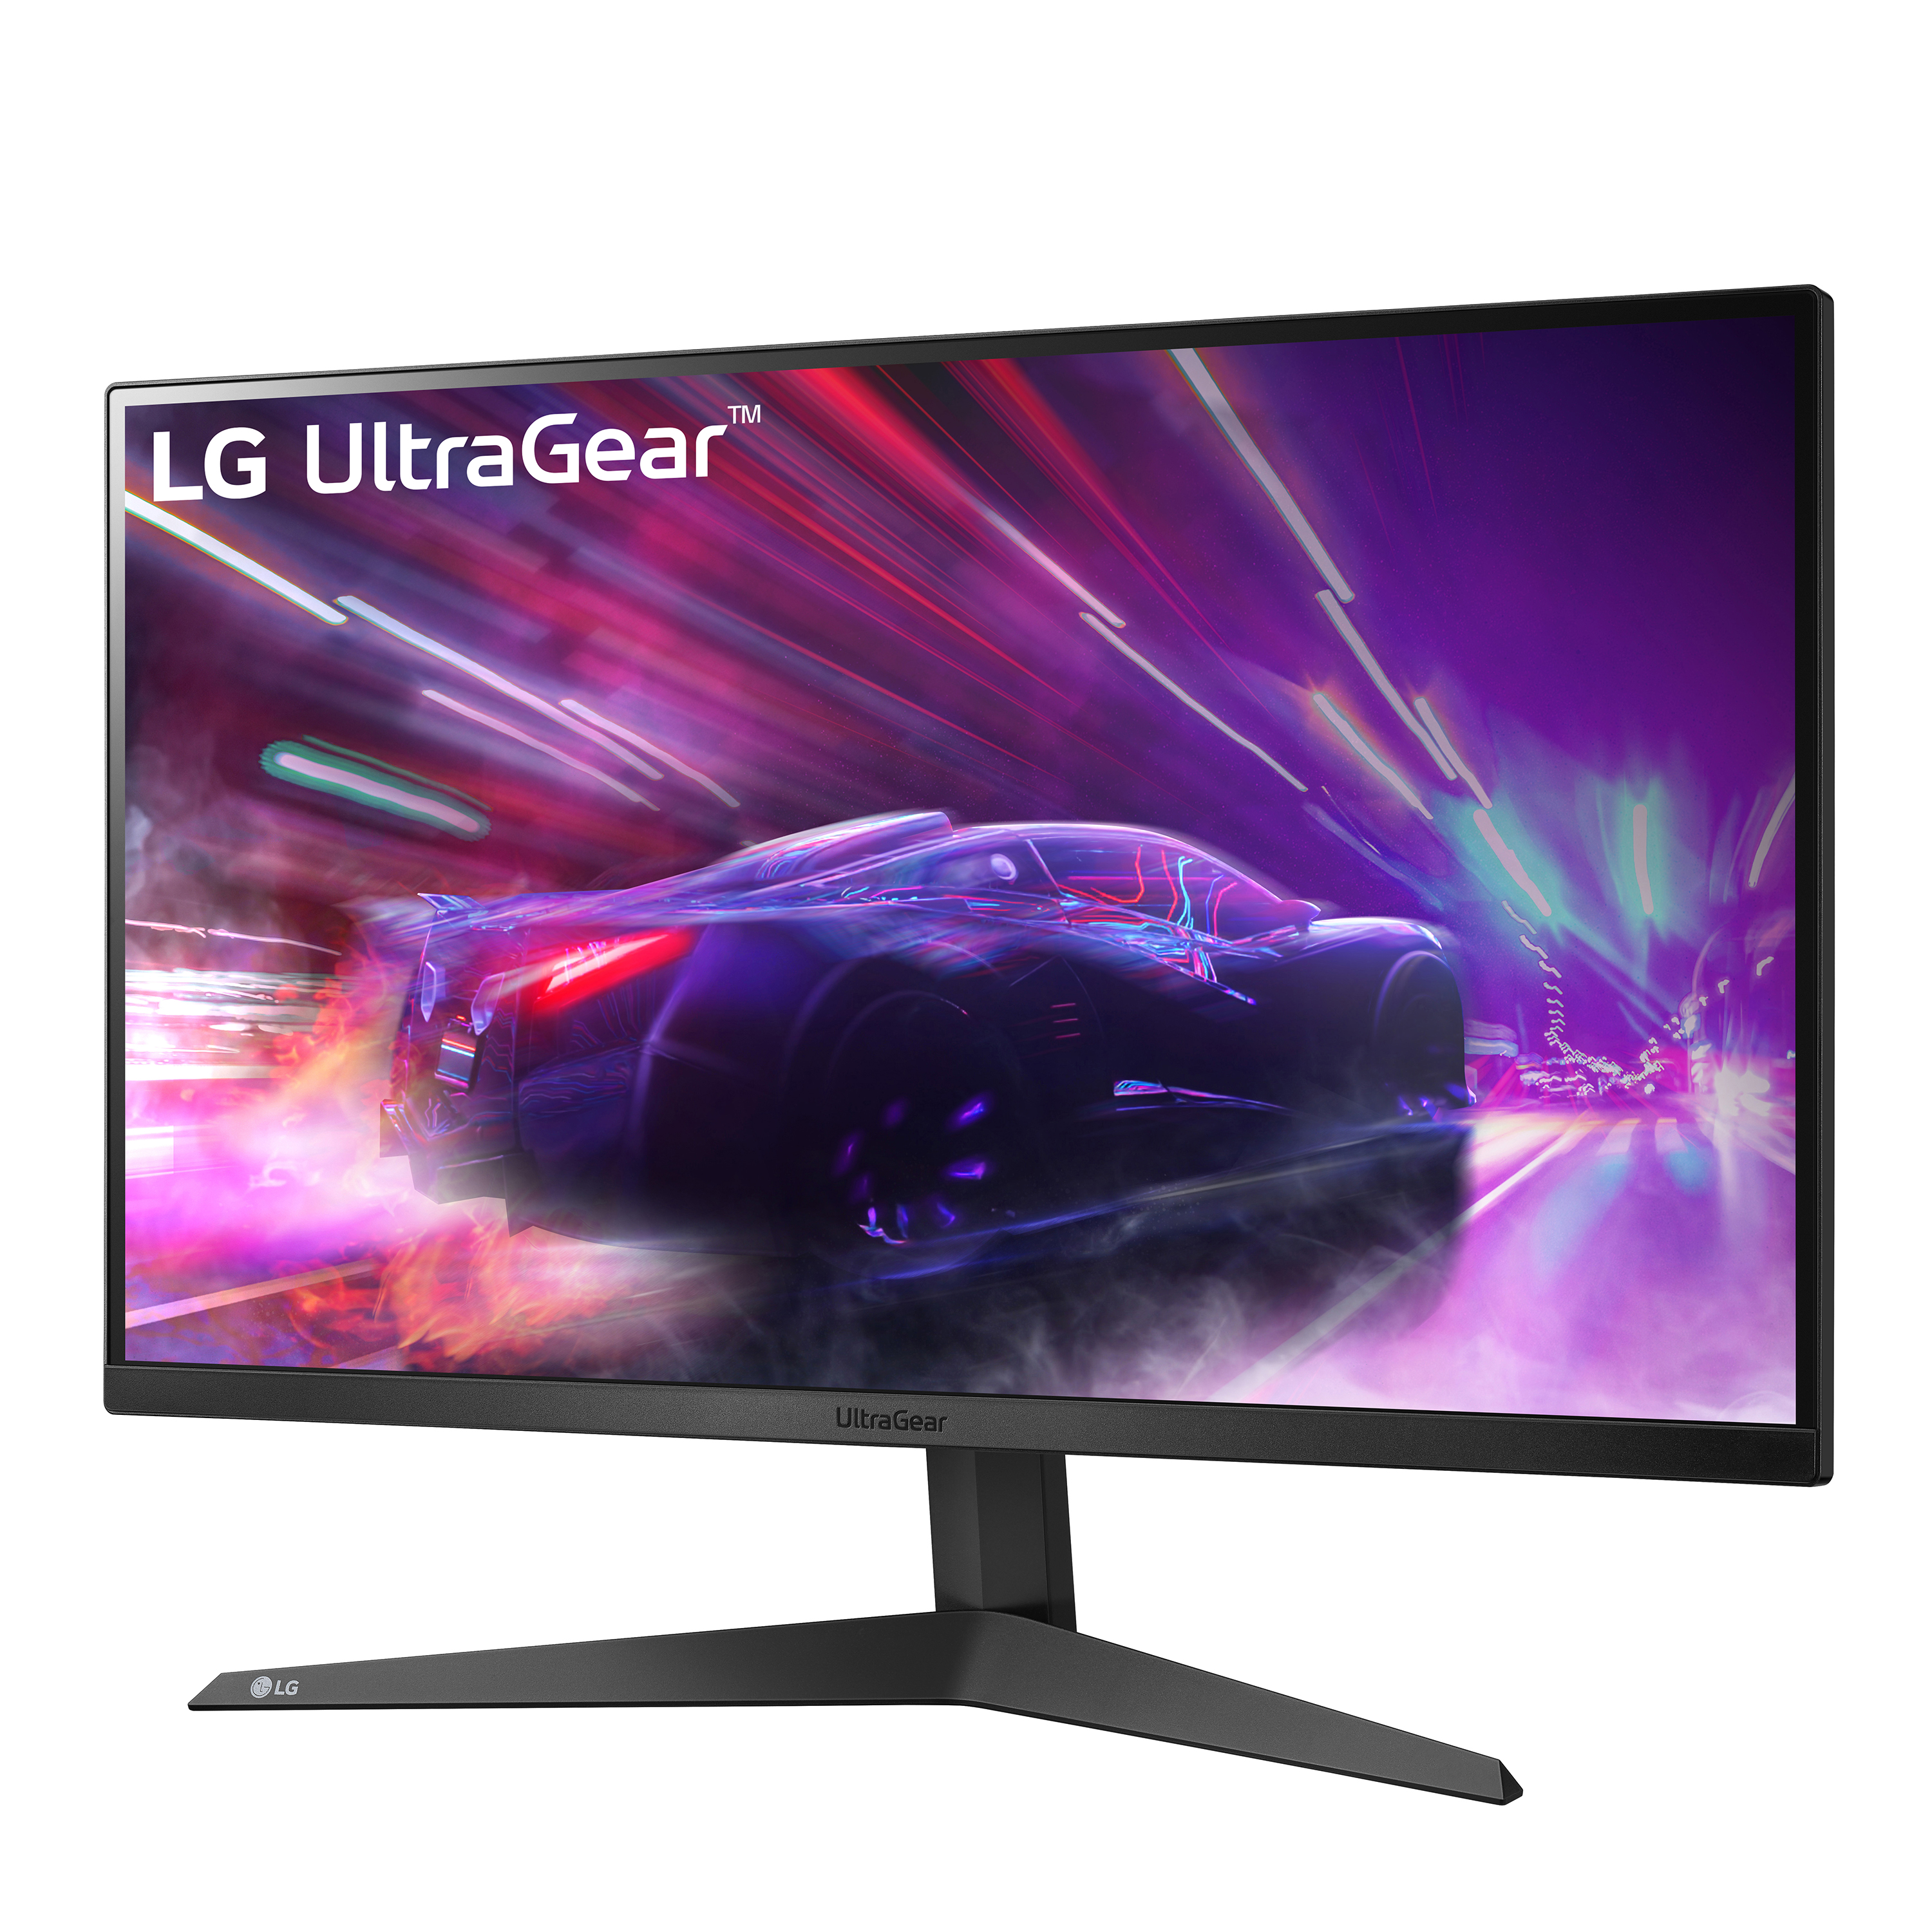 LG 27” UltraGear FHD 1ms 165Hz Gaming Monitor with AMD FreeSync™ Premium & Black Stabilizer (1920 x 1080) - 27GQ40W-B - image 3 of 10